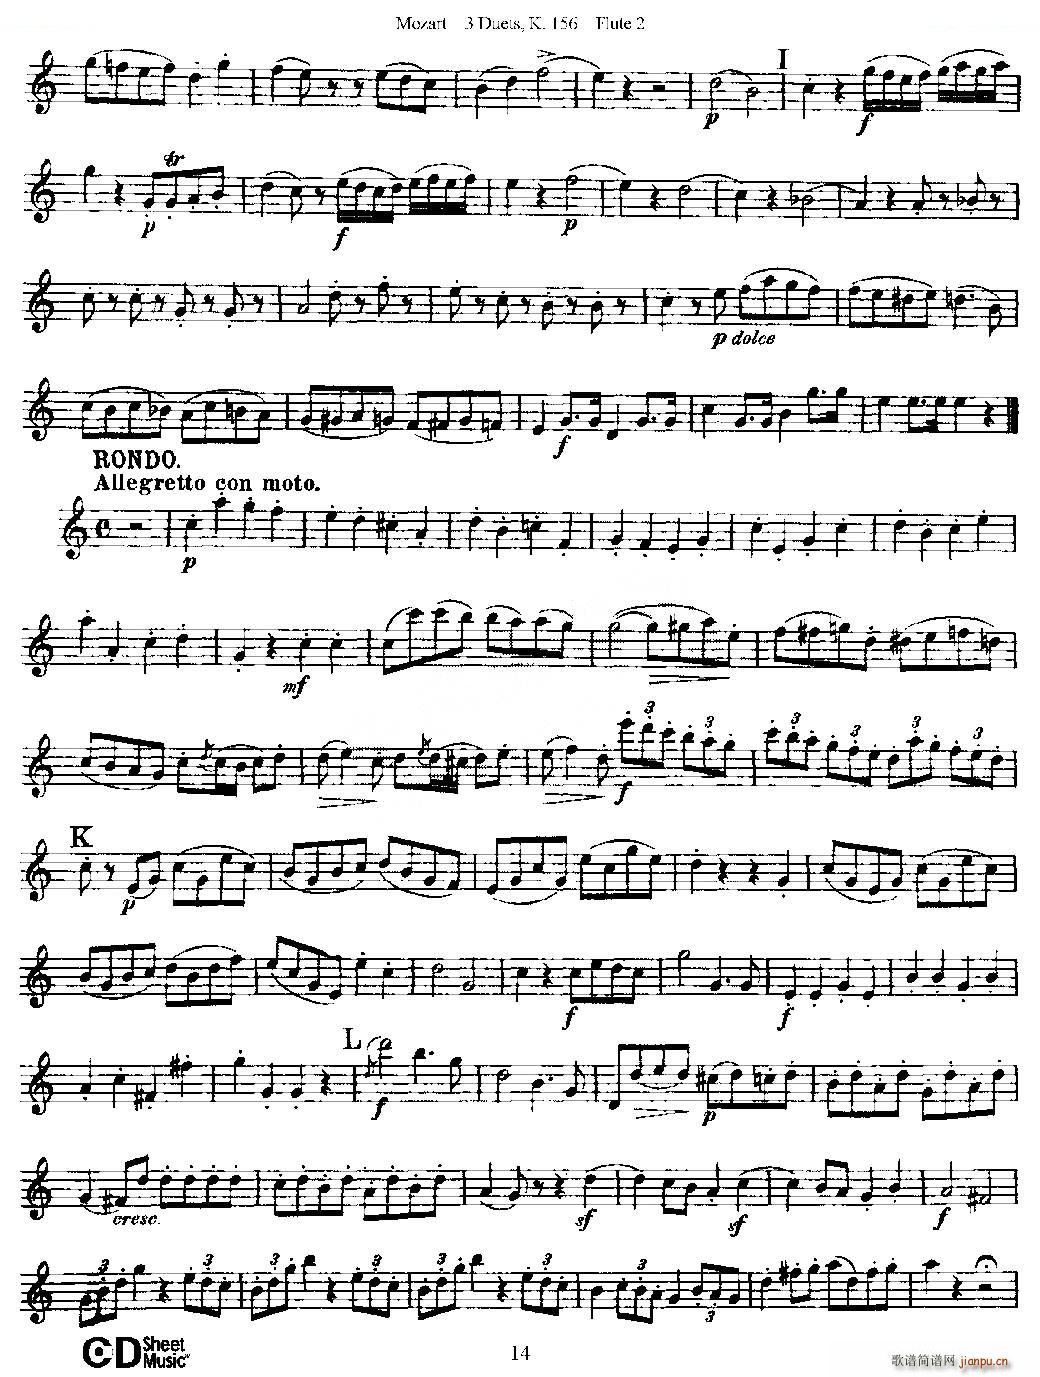 3 Duets K 156 之第二长笛 二重奏三首 K156号 铜管(笛箫谱)14